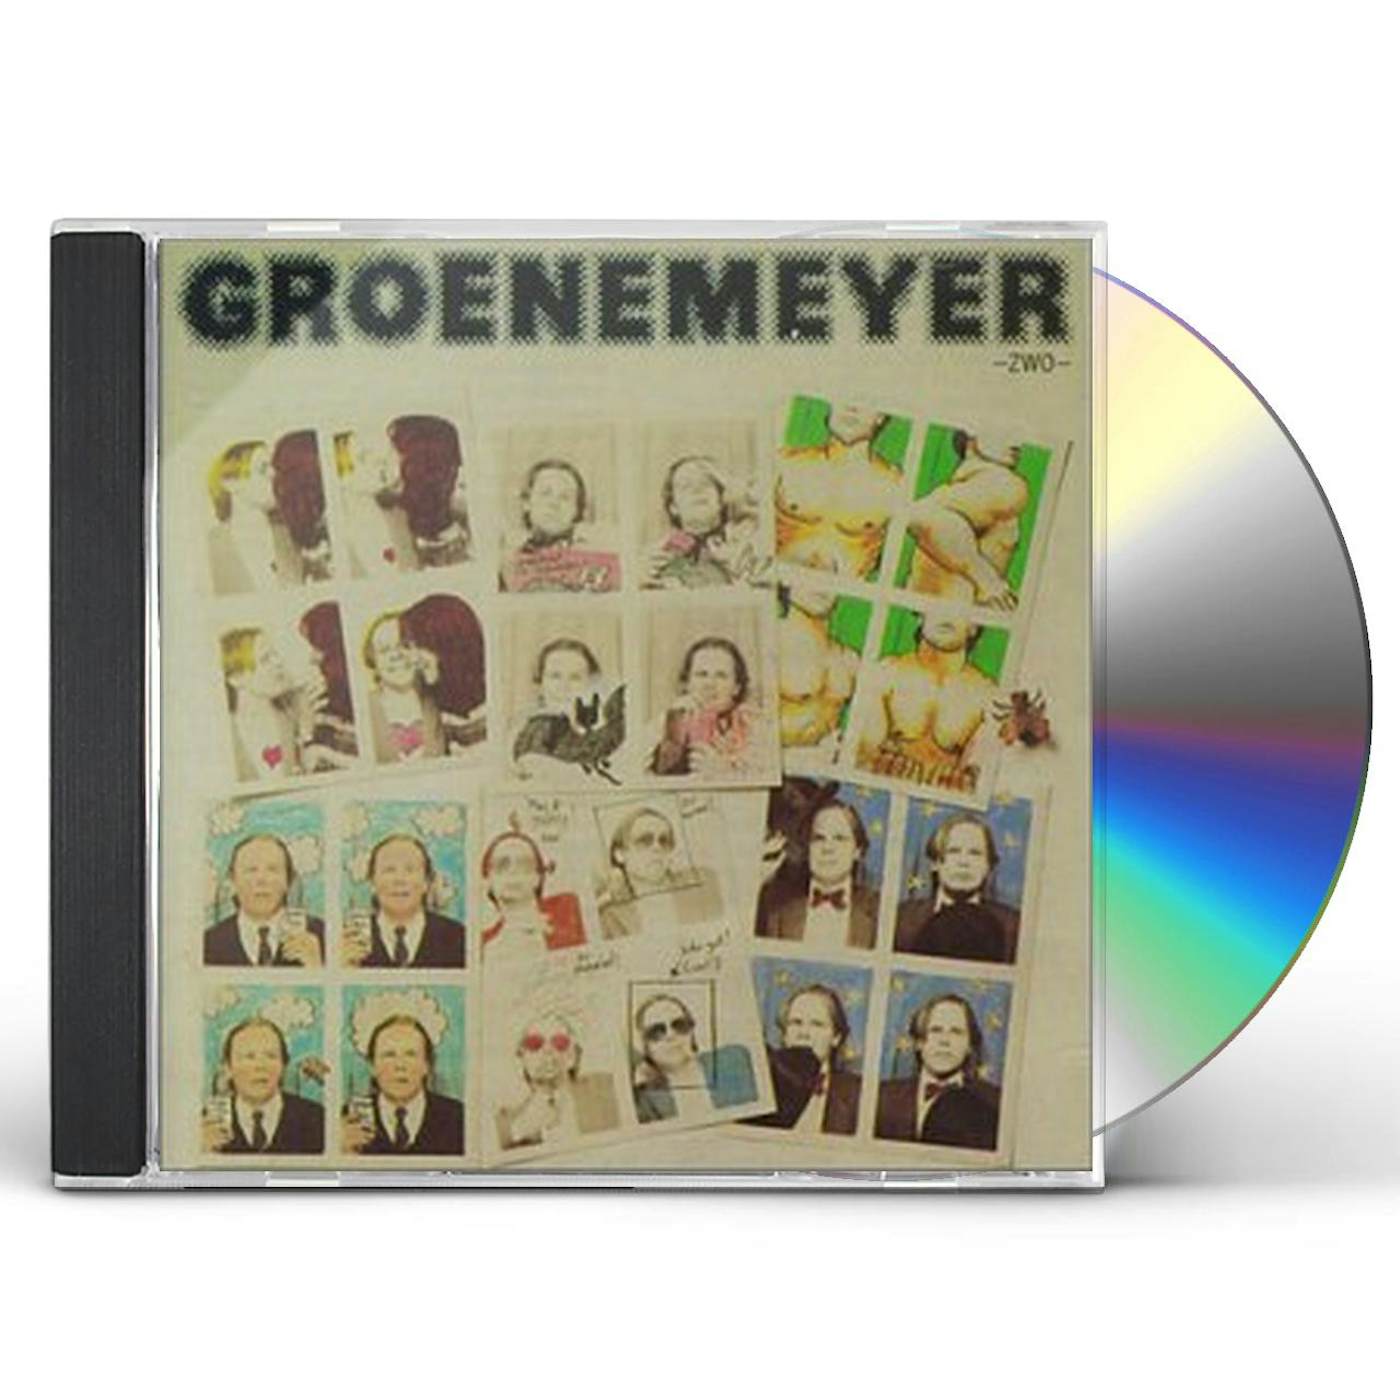 Herbert Groenemeyer ZWO CD